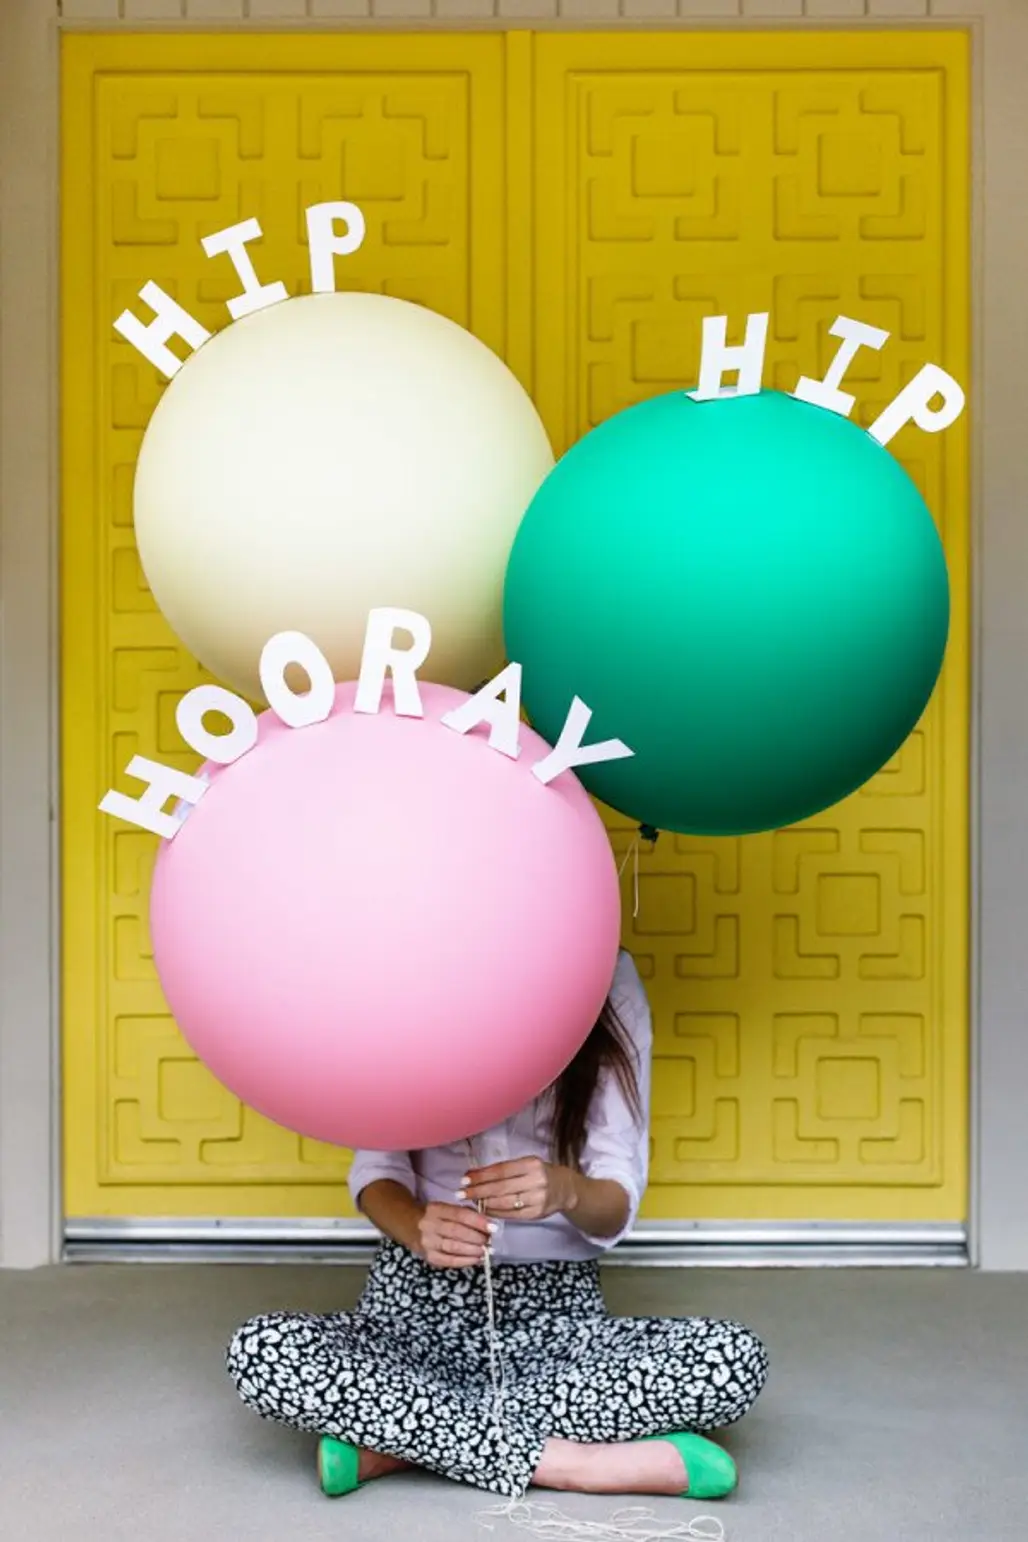 play, toy, balloon, illustration,